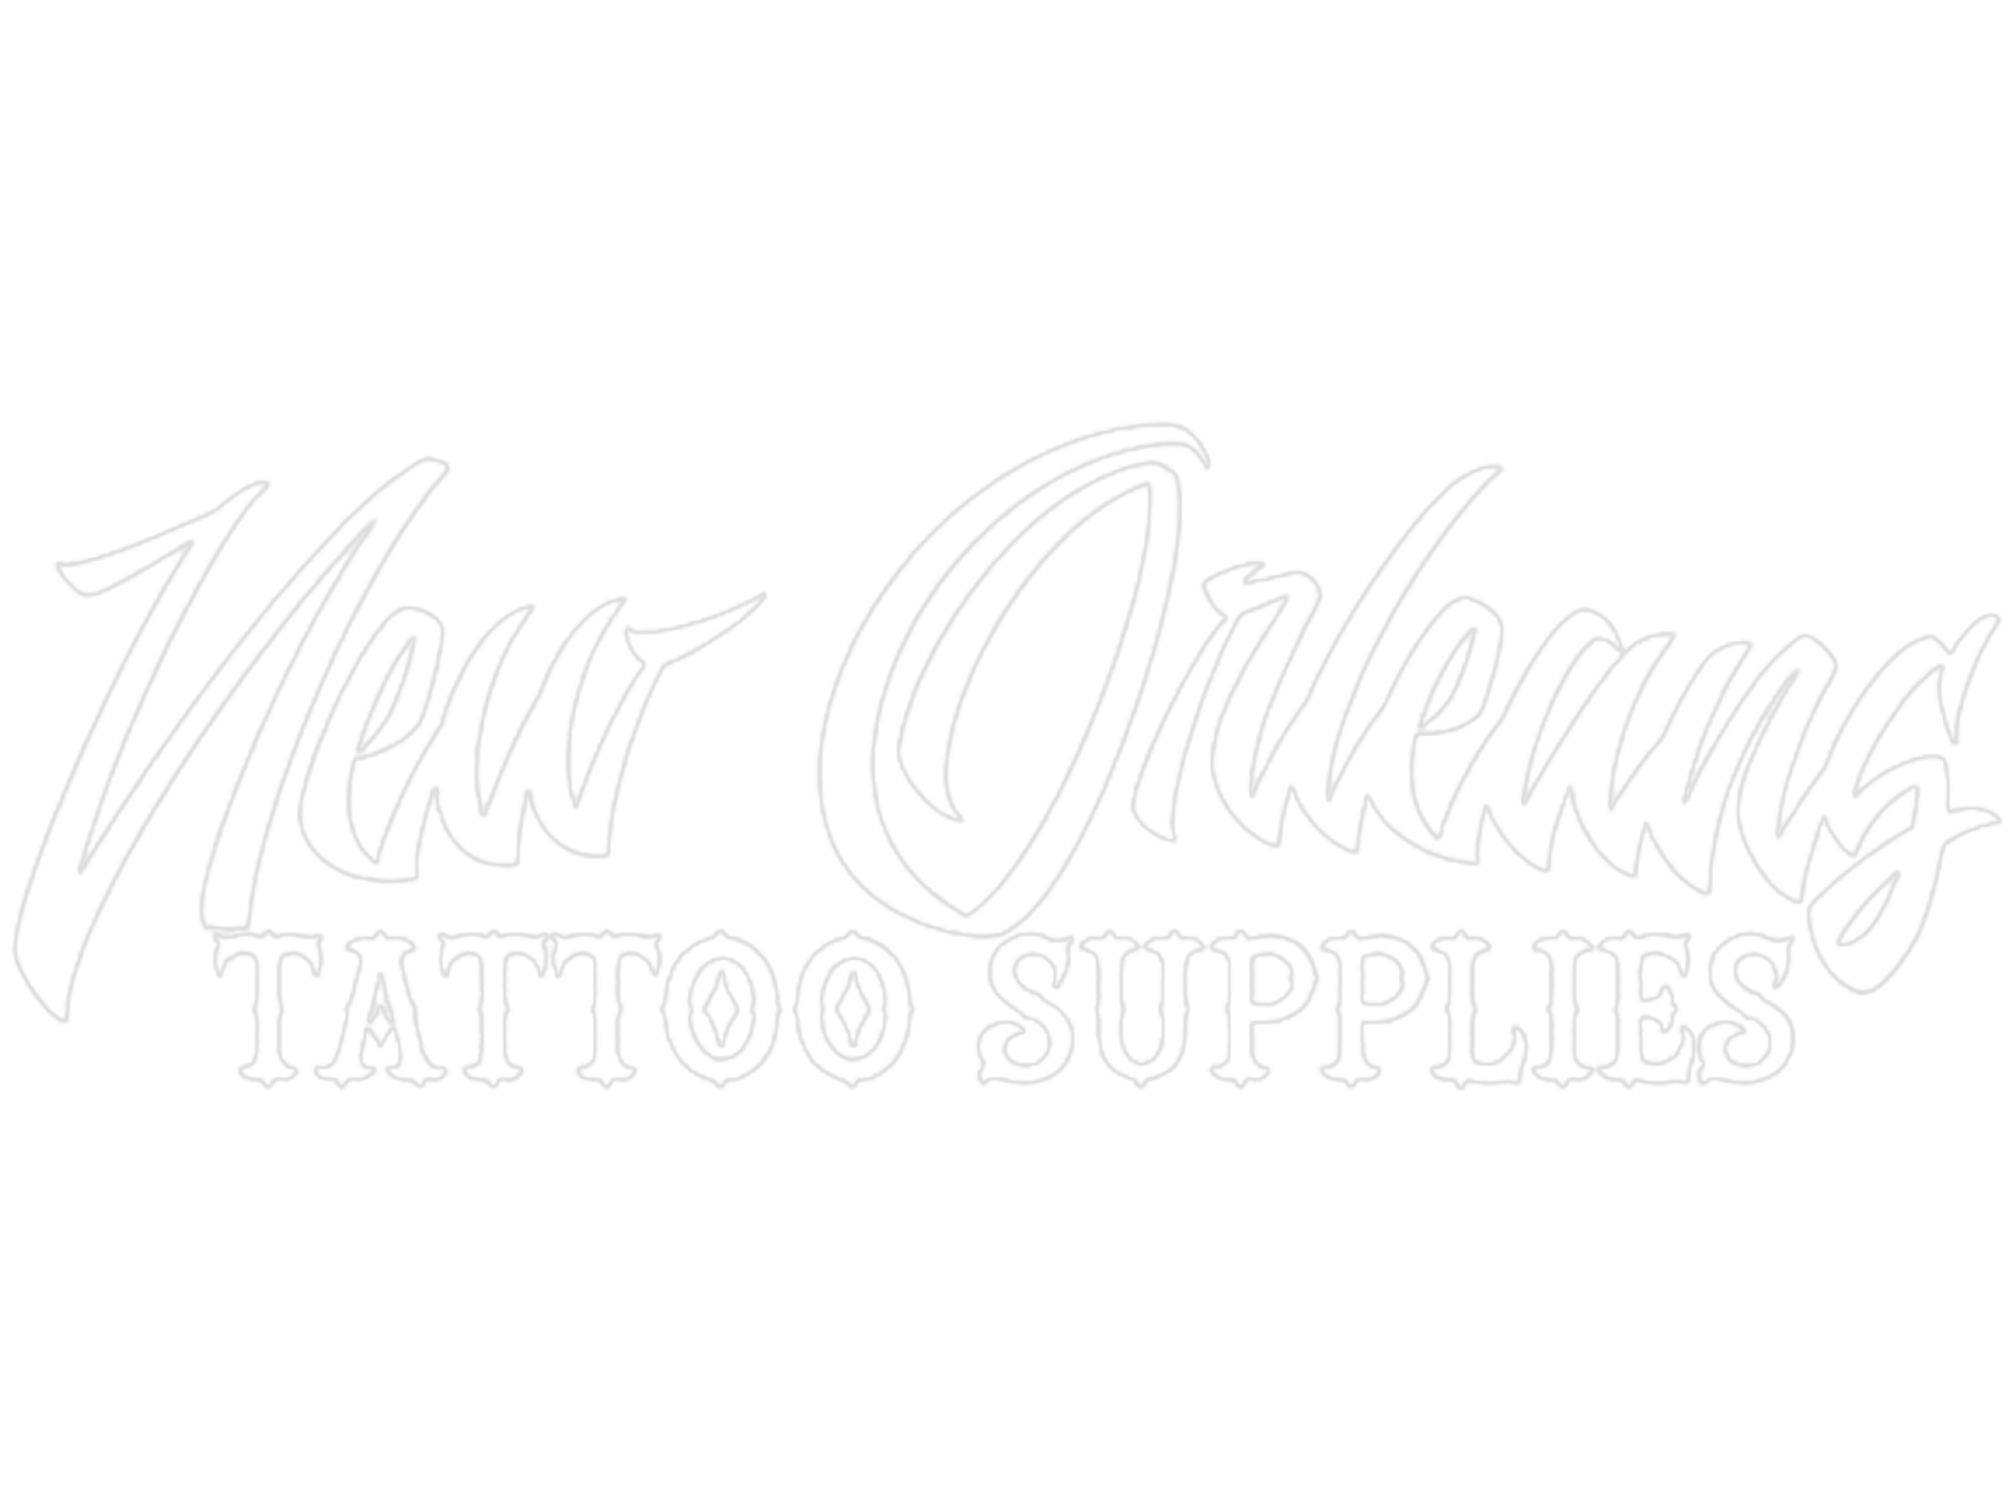 Katrina survivors sport memorial tattoos